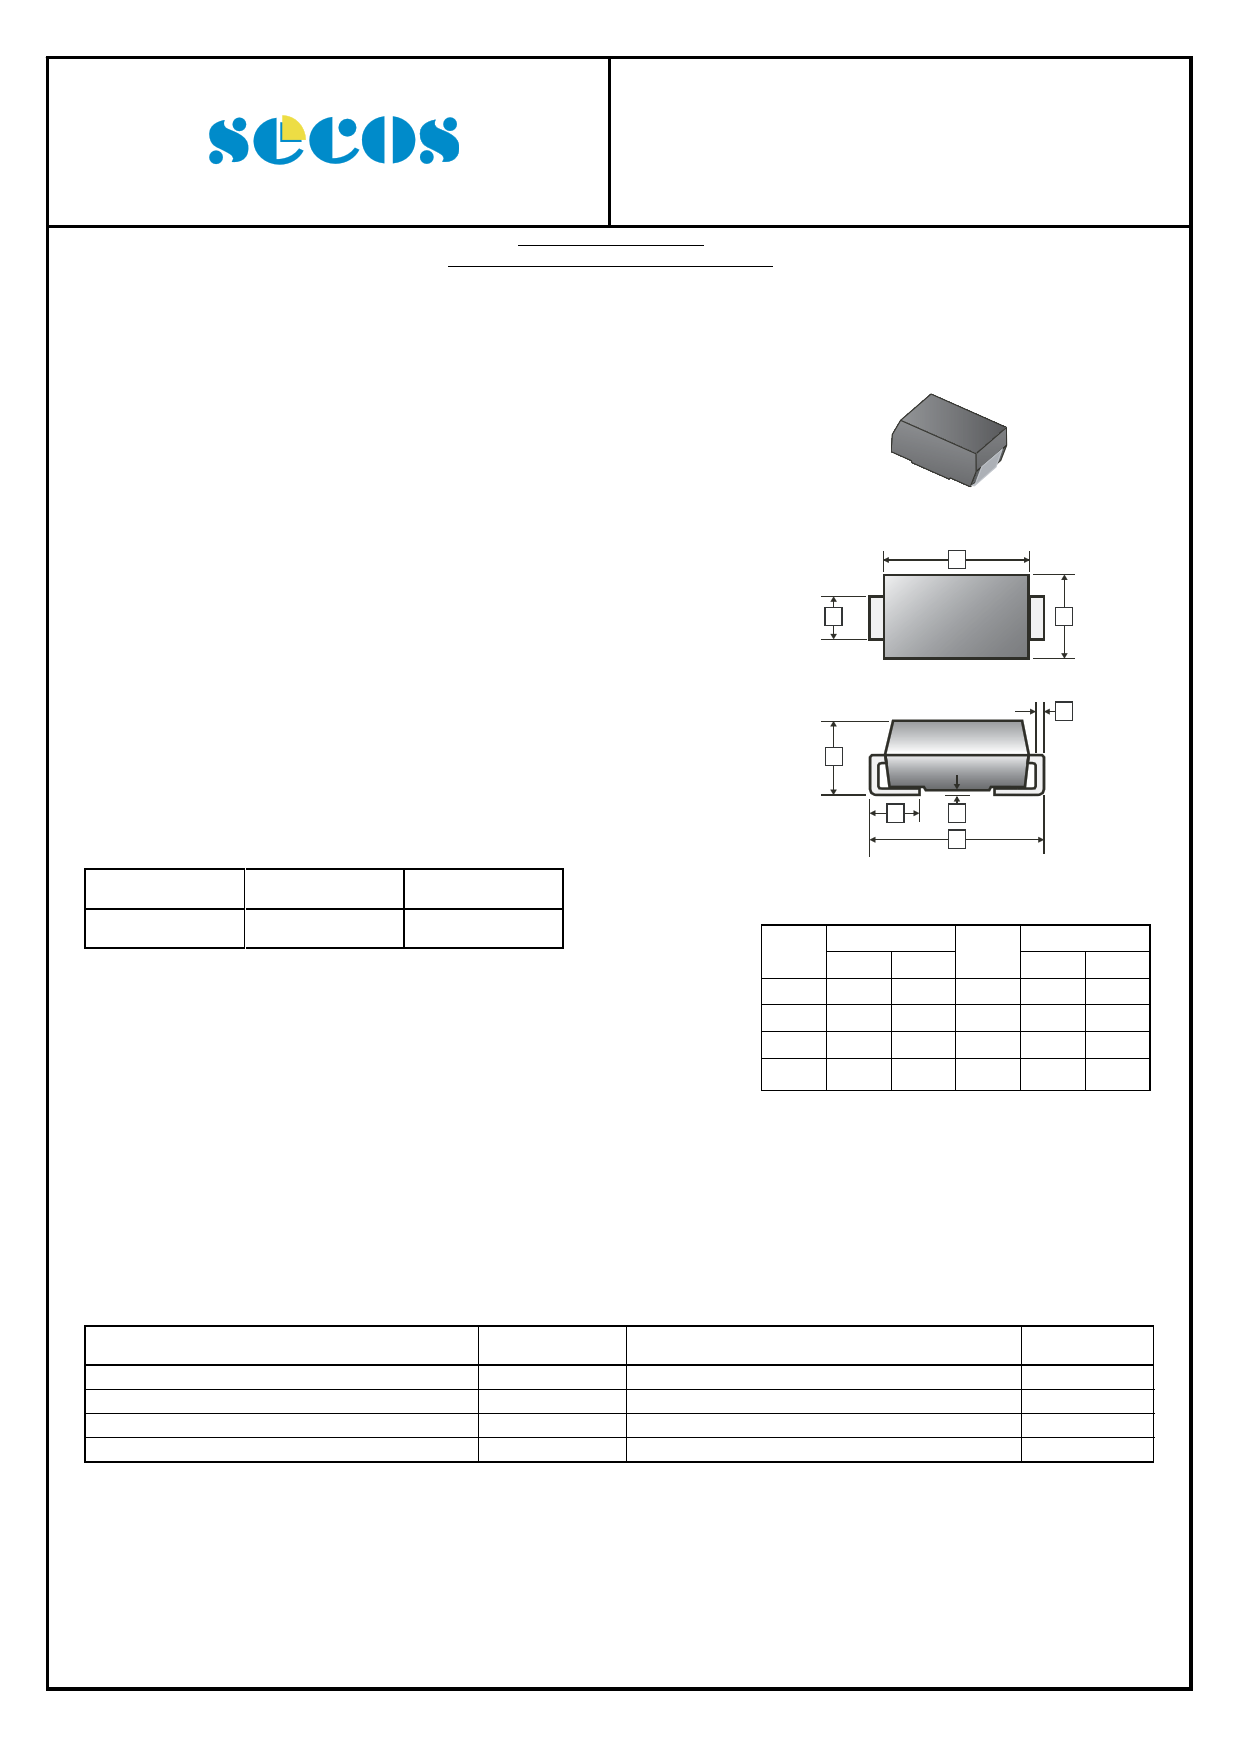 SMB5955B Datasheet, SMB5955B PDF,ピン配置, 機能